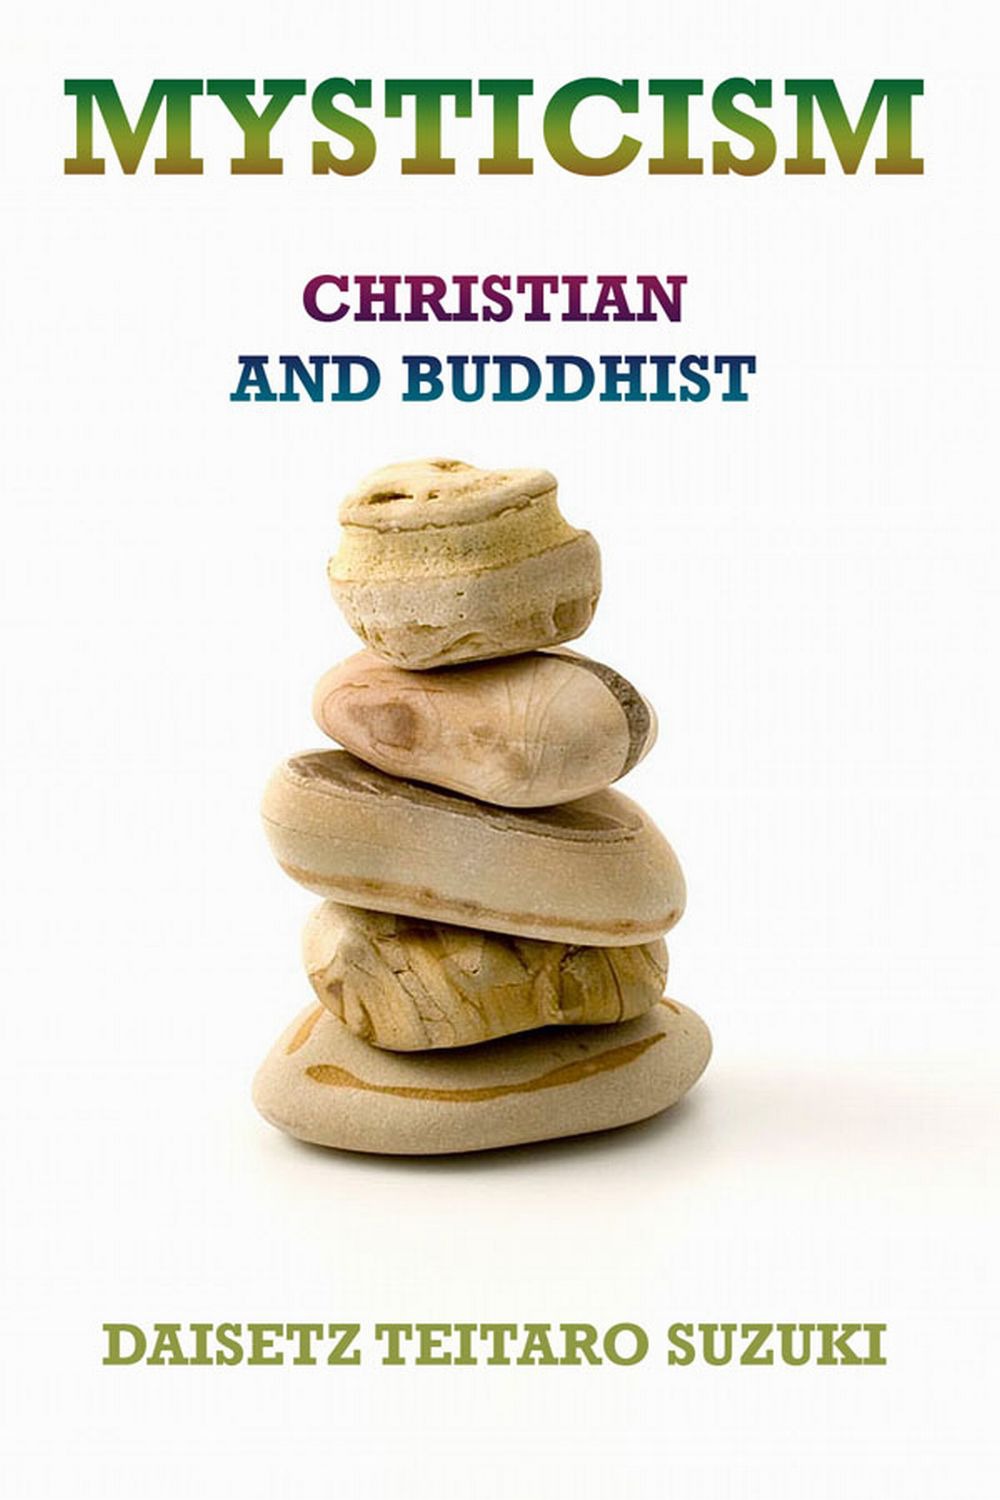 Mysticism, Christian and Buddhist - Daisetz Teitaro Suzuki,,